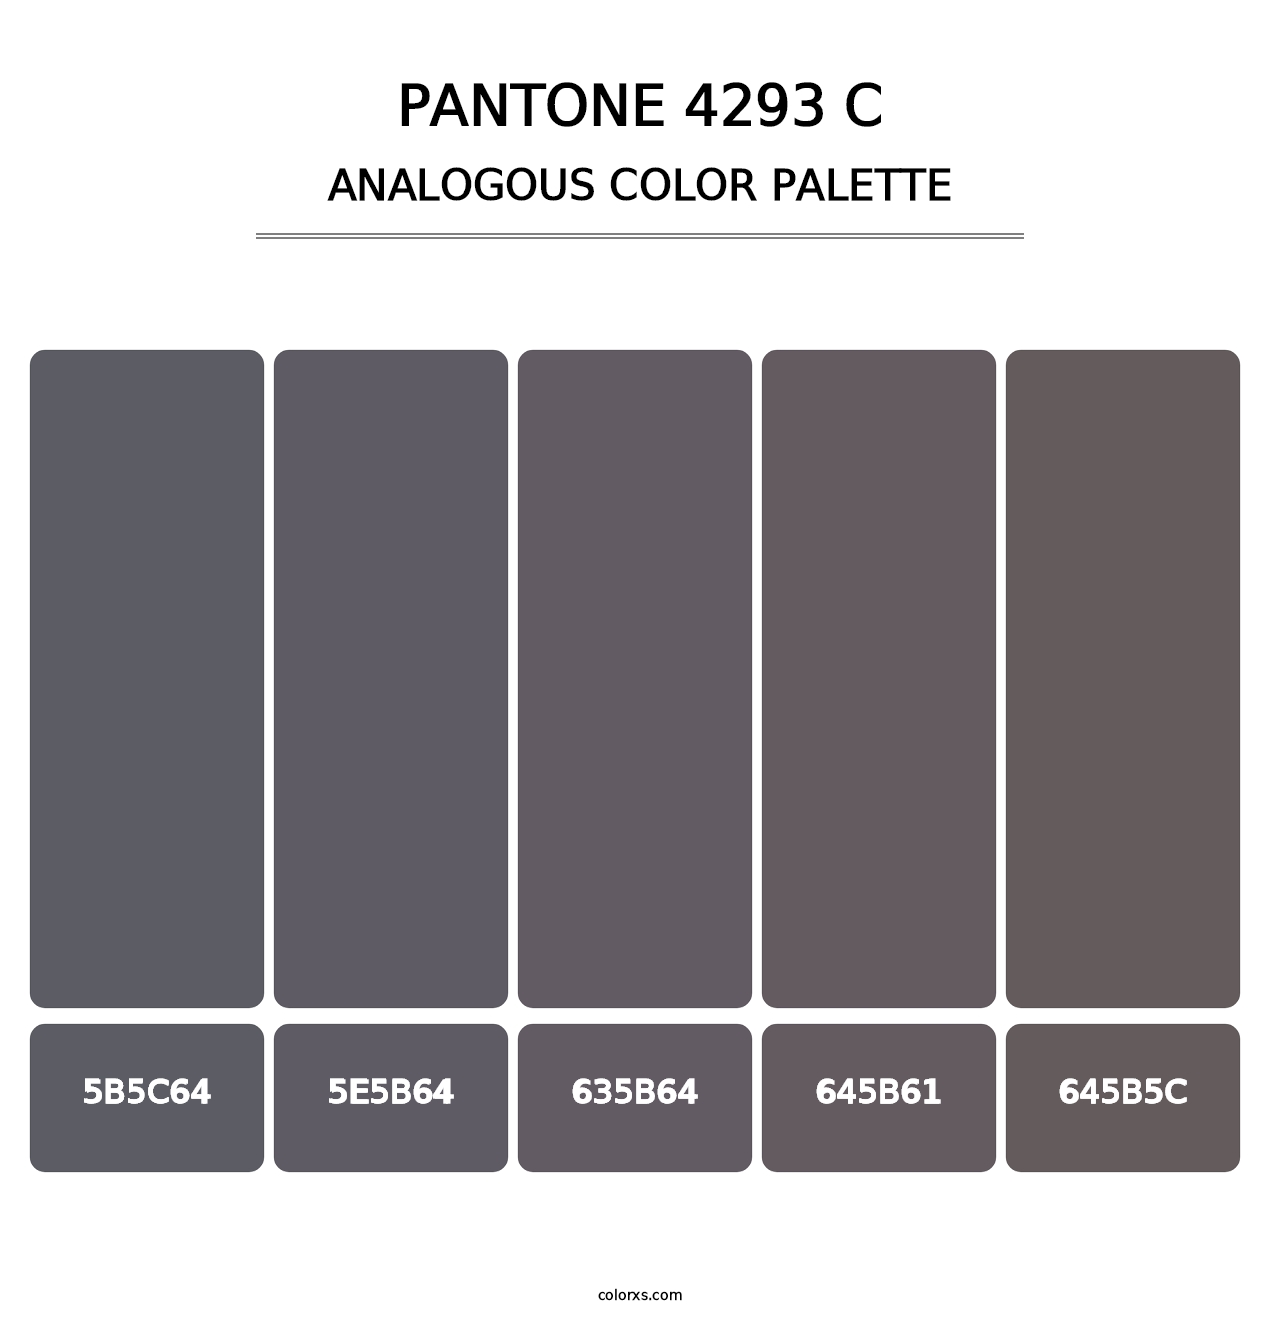 PANTONE 4293 C - Analogous Color Palette